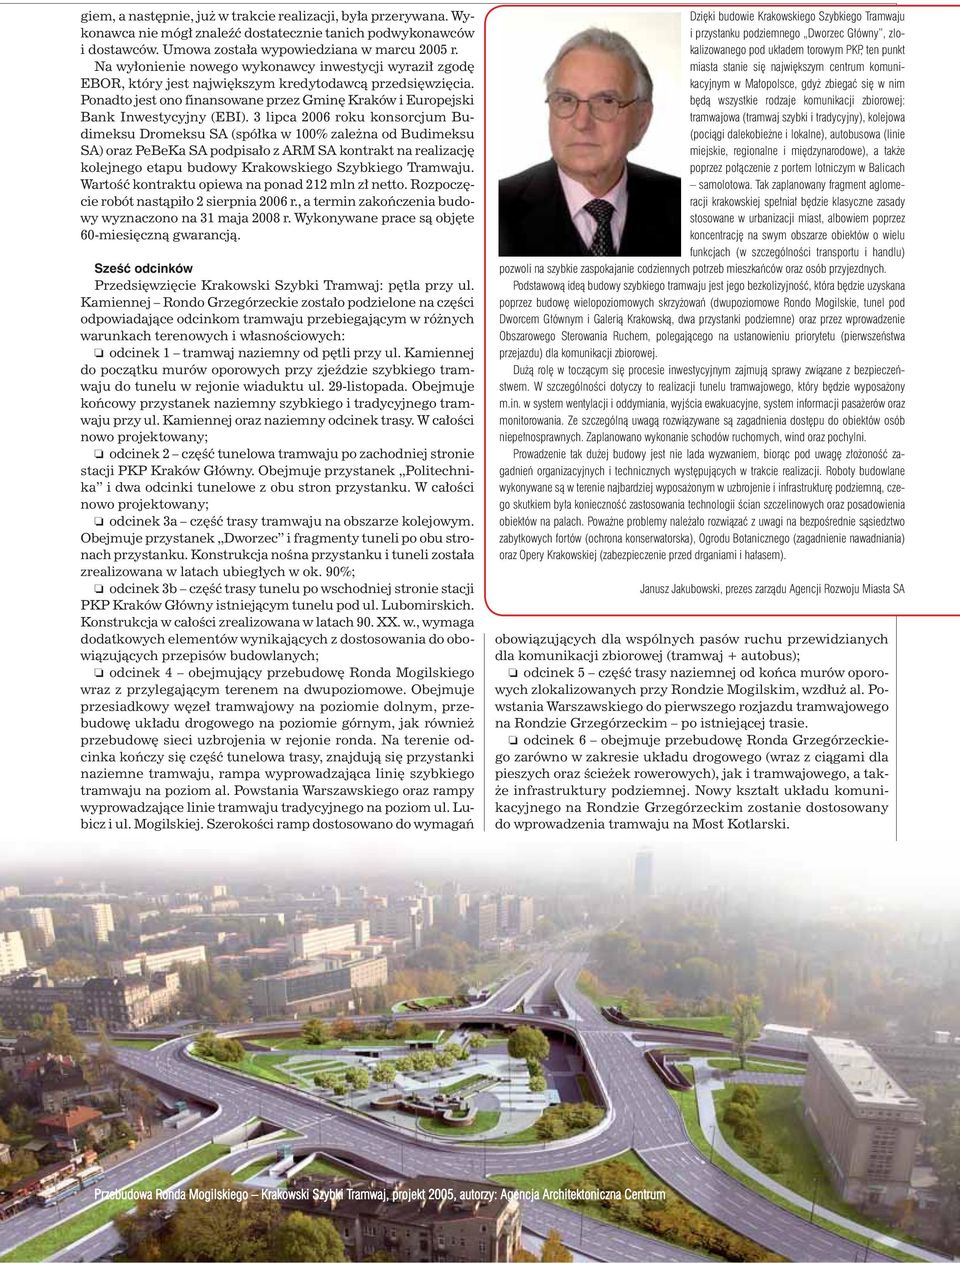 3 lipca 2006 roku konsorcjum Budimeksu Dromeksu SA (spółka w 100% zależna od Budimeksu SA) oraz PeBeKa SA podpisało z ARM SA kontrakt na realizację kolejnego etapu budowy Krakowskiego Szybkiego